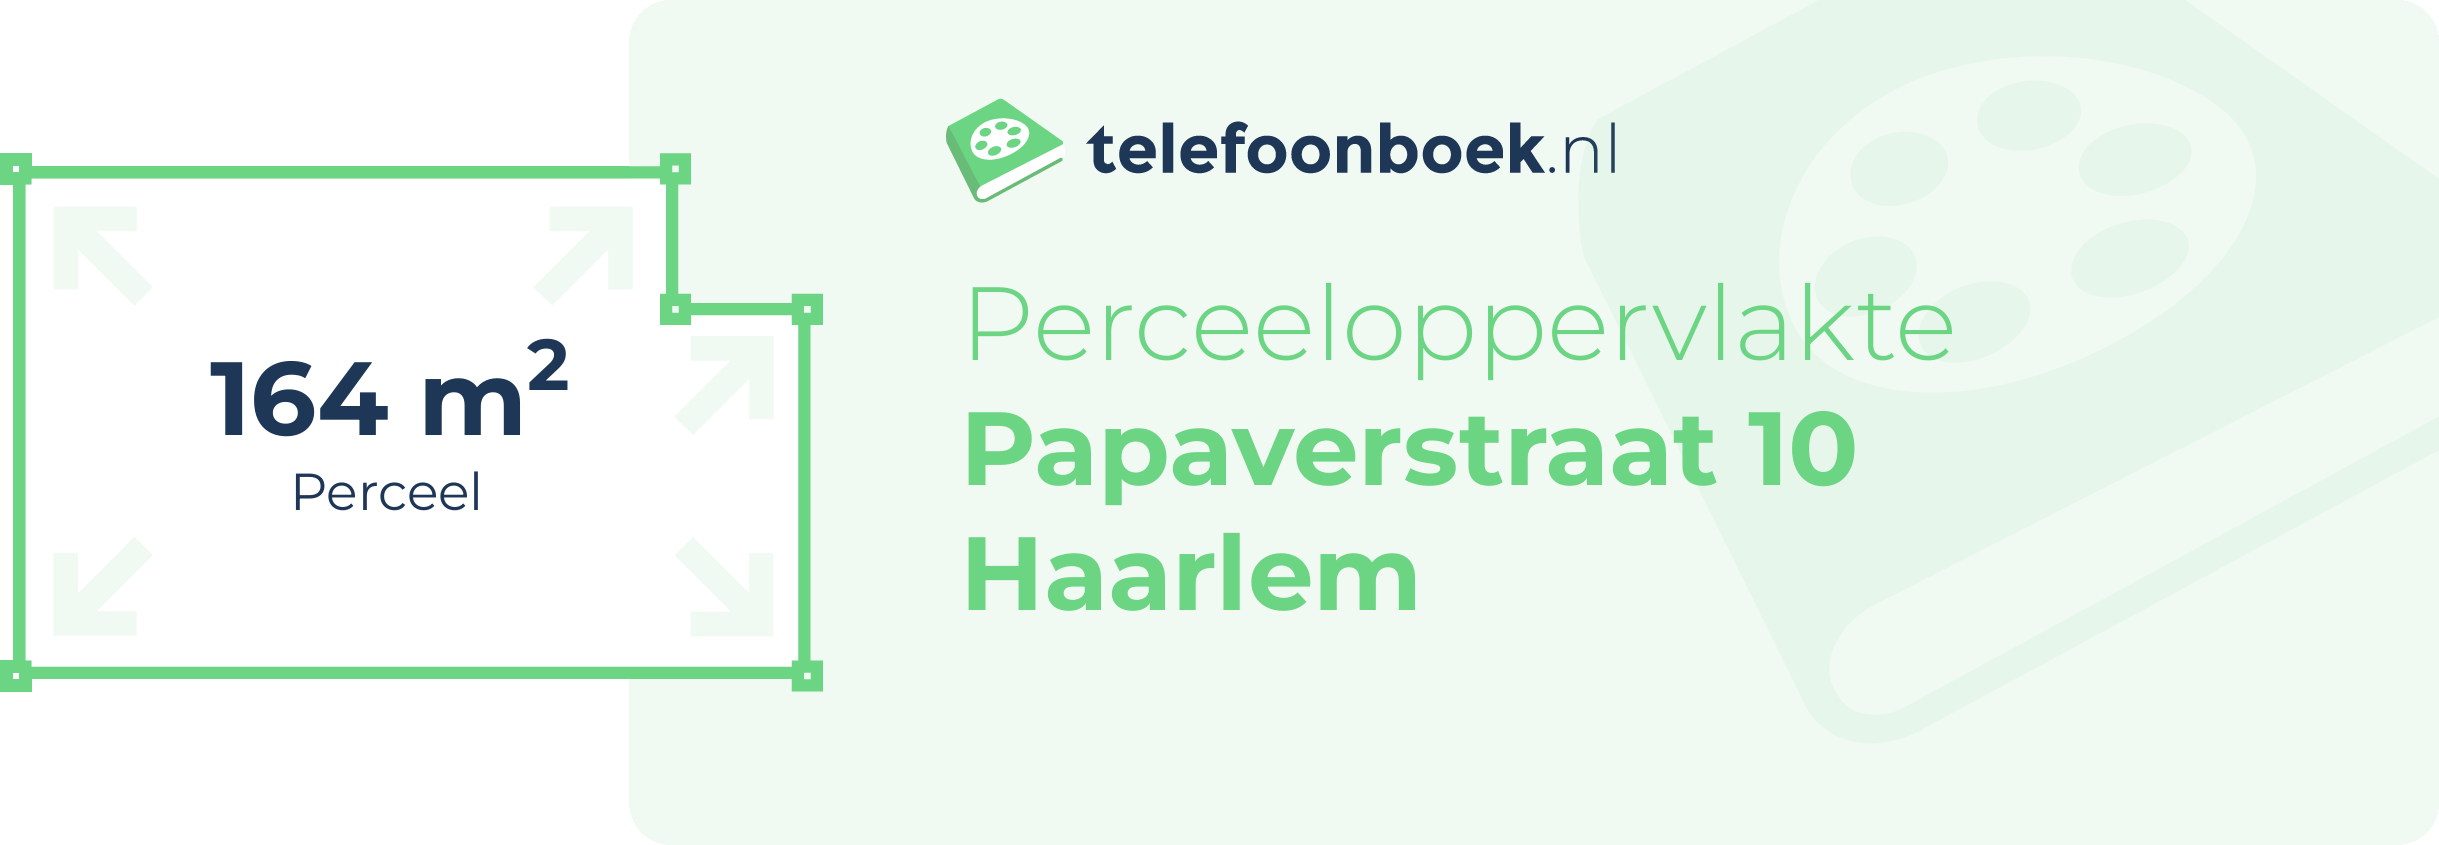 Perceeloppervlakte Papaverstraat 10 Haarlem